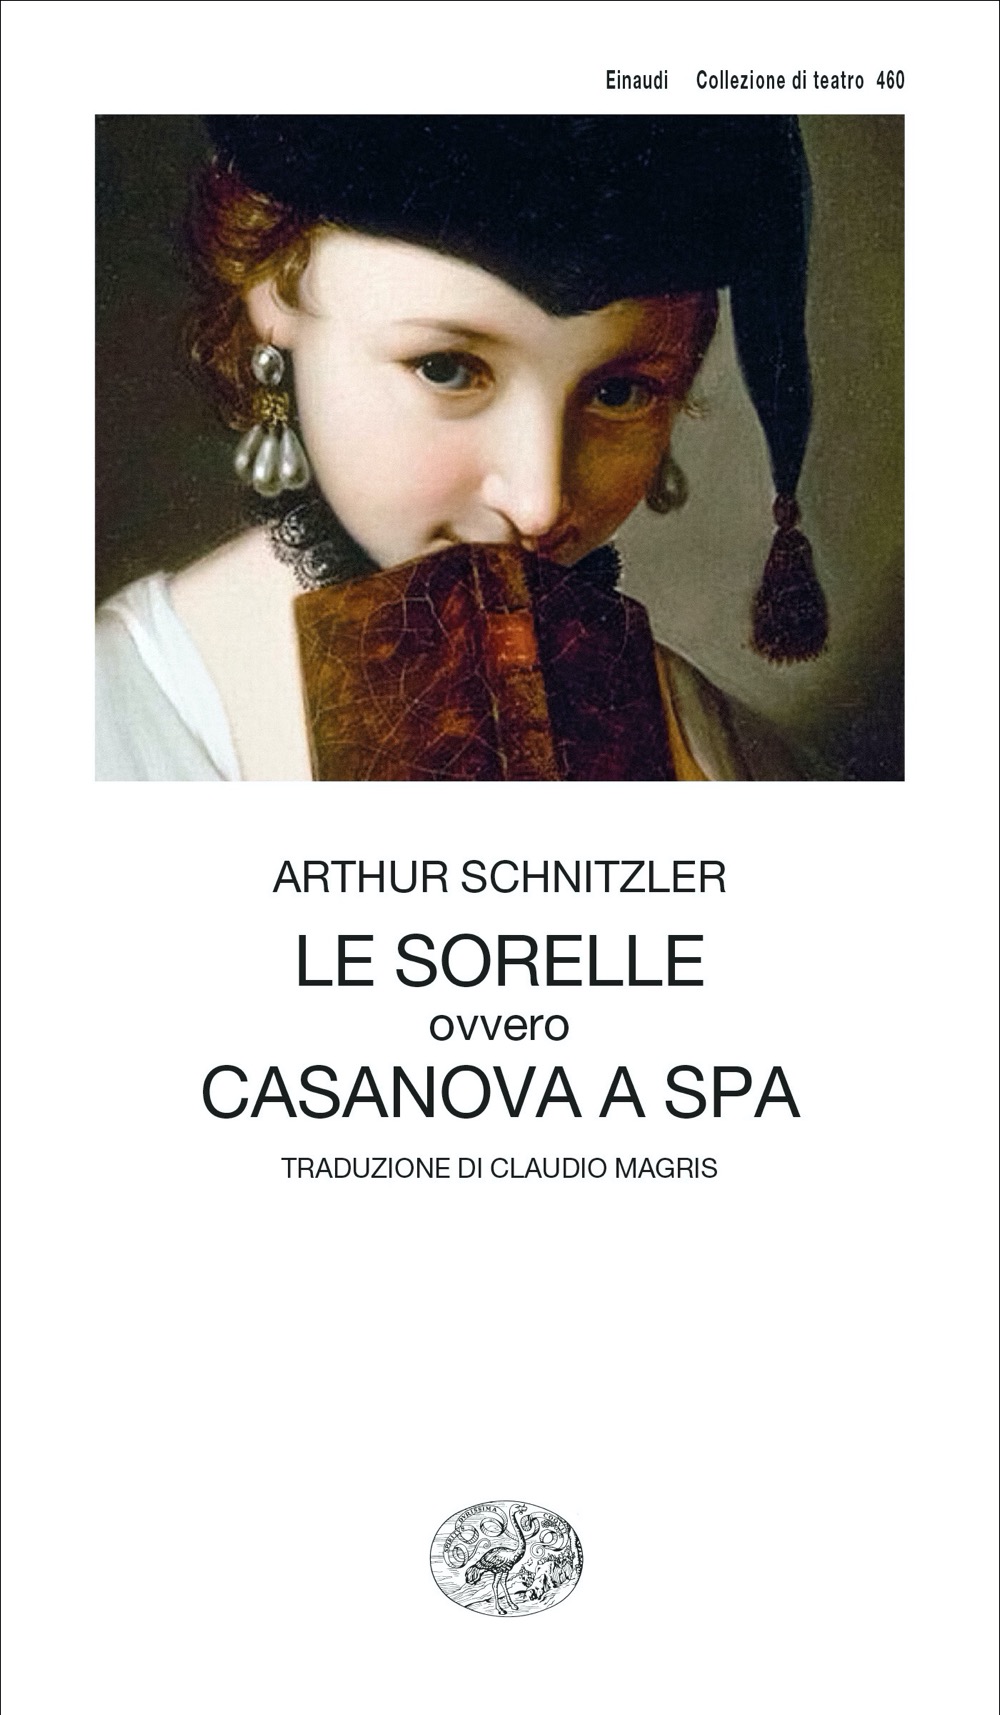 Le sorelle ovvero Casanova a Spa, Arthur Schnitzler. Giulio